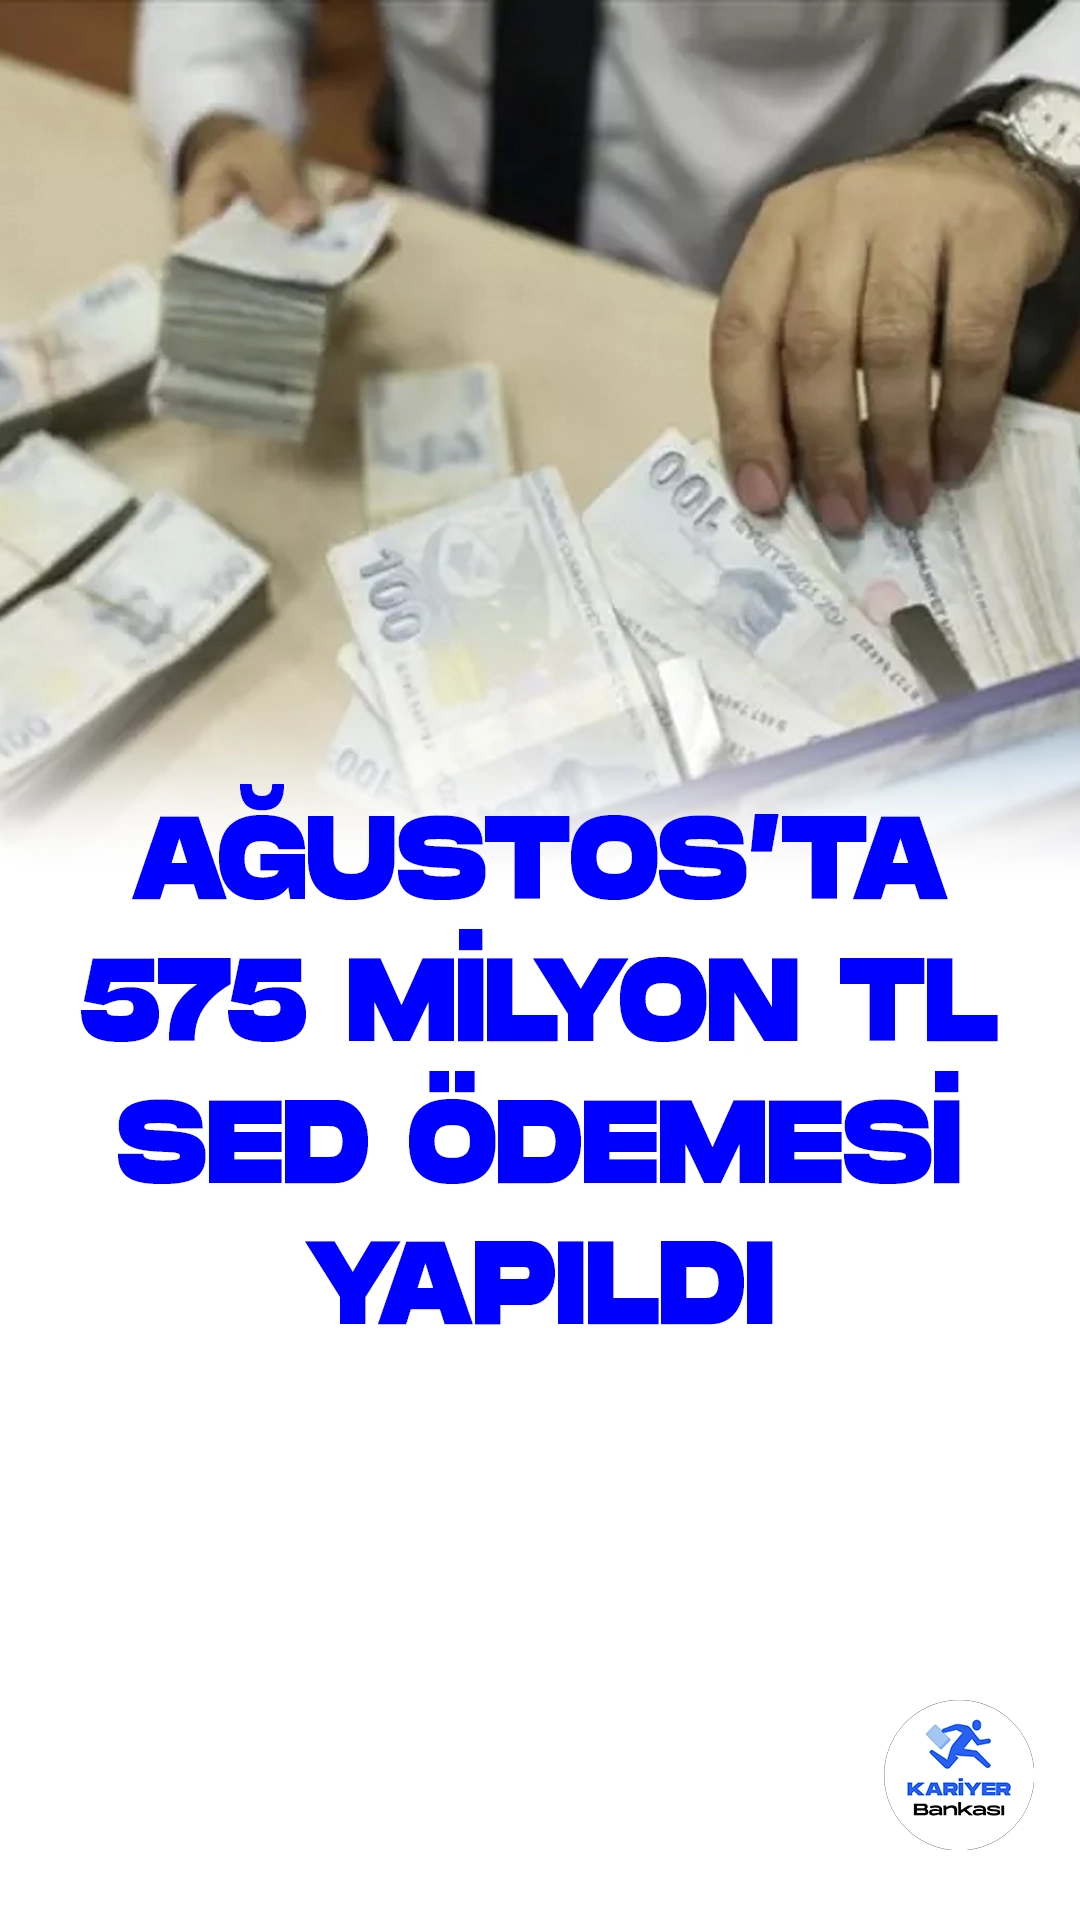 Ağustos'ta 575 Milyon TL SED Ödemesi Yapıldı. Aile ve Sosyal Hizmetler Bakanlığı Ağustos ayında Sosyal ve Ekonomik Destek (SED) programı kapsamında 575 Milyon TL SED ödemesi yapıldığını açıkladı.